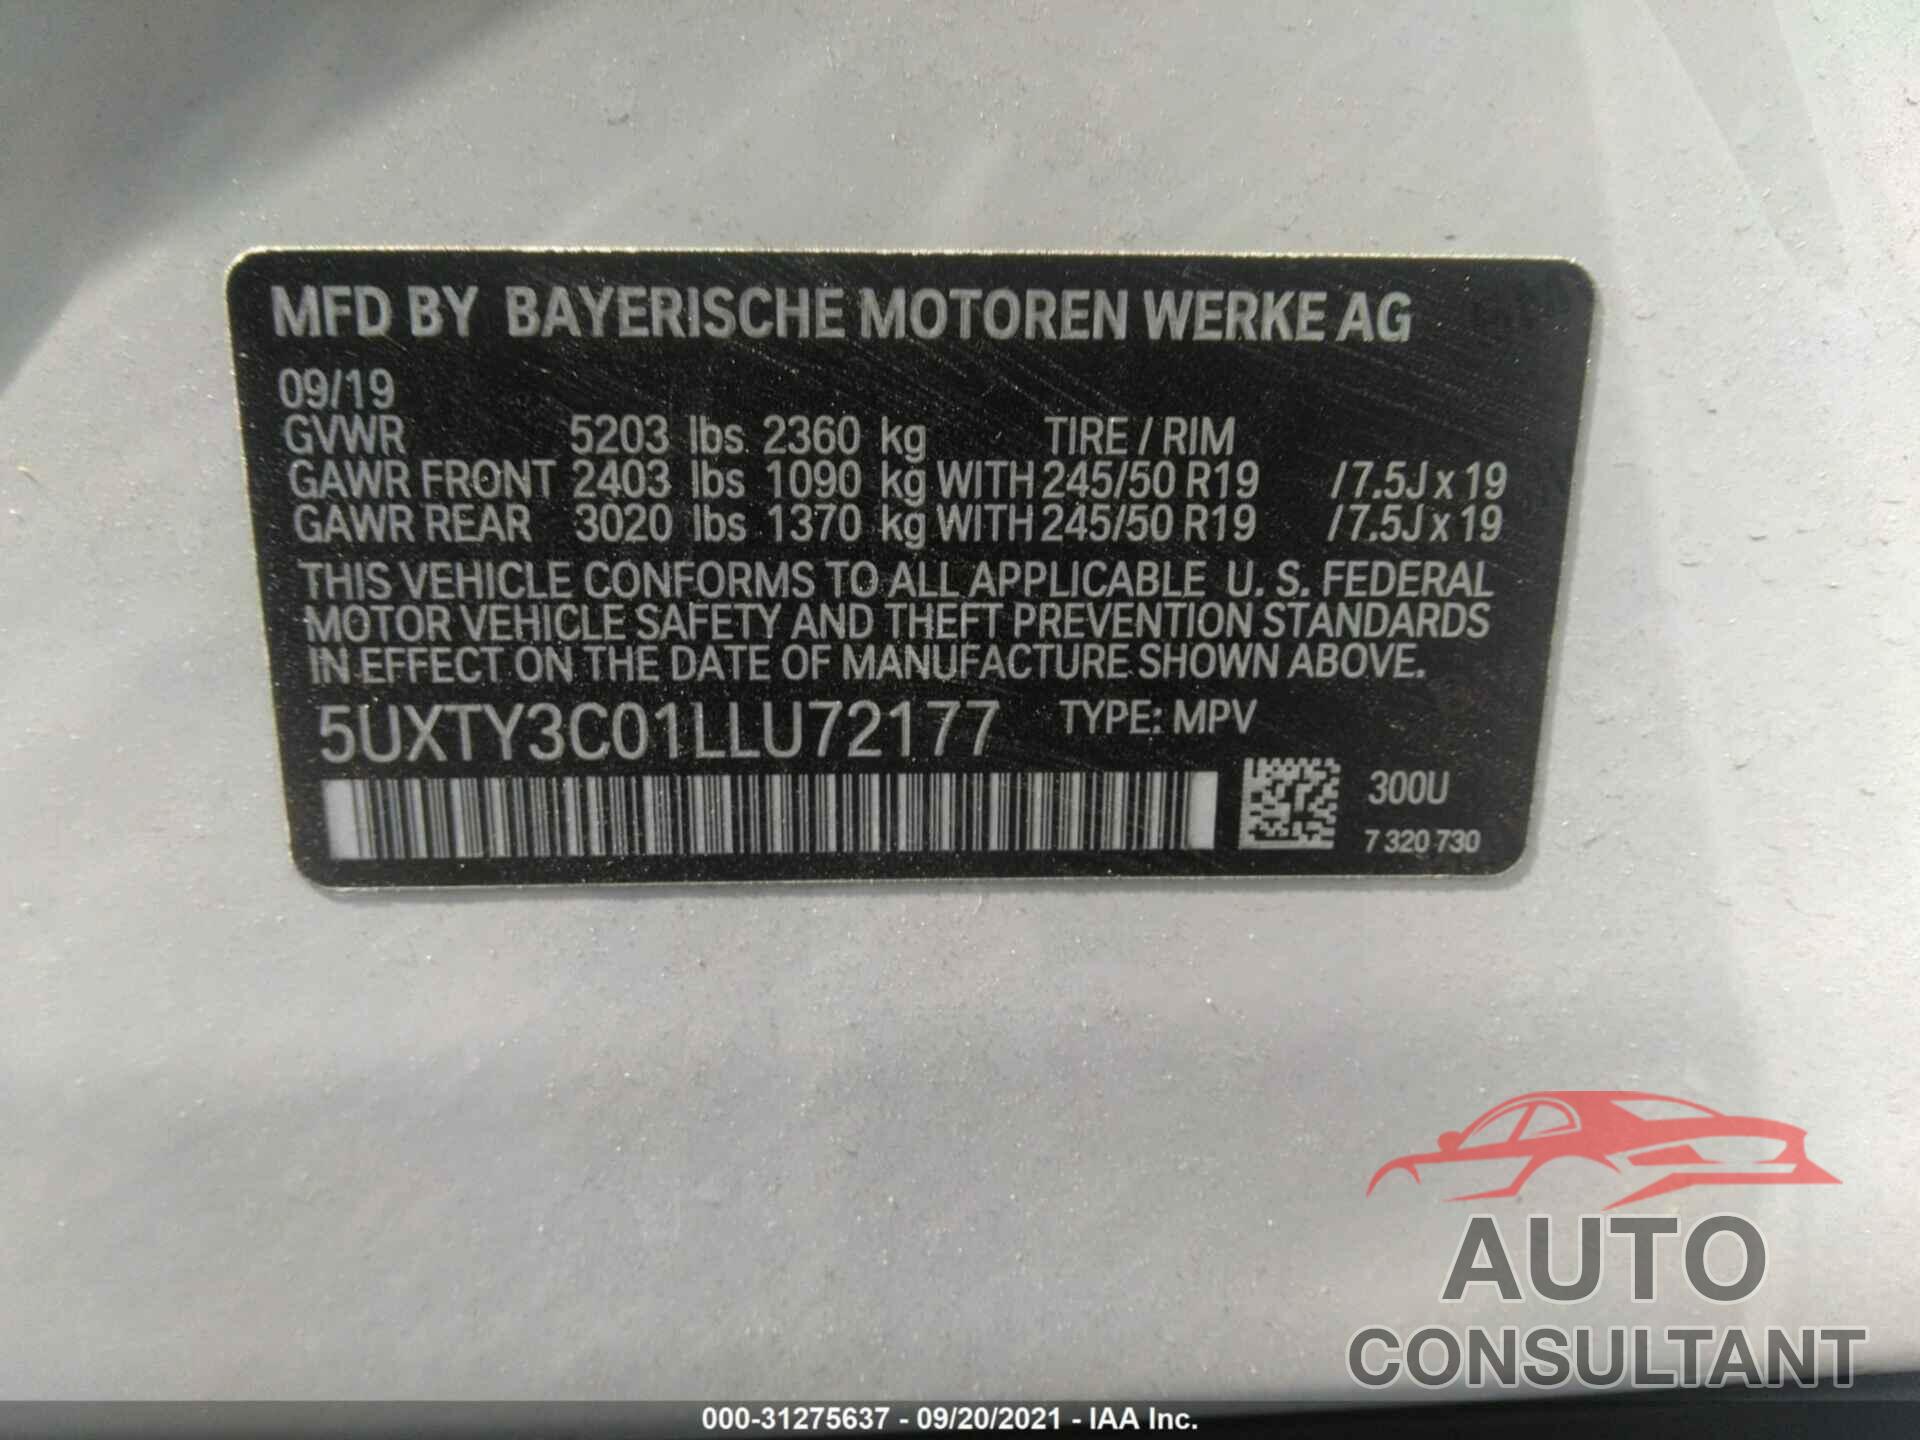 BMW X3 2020 - 5UXTY3C01LLU72177